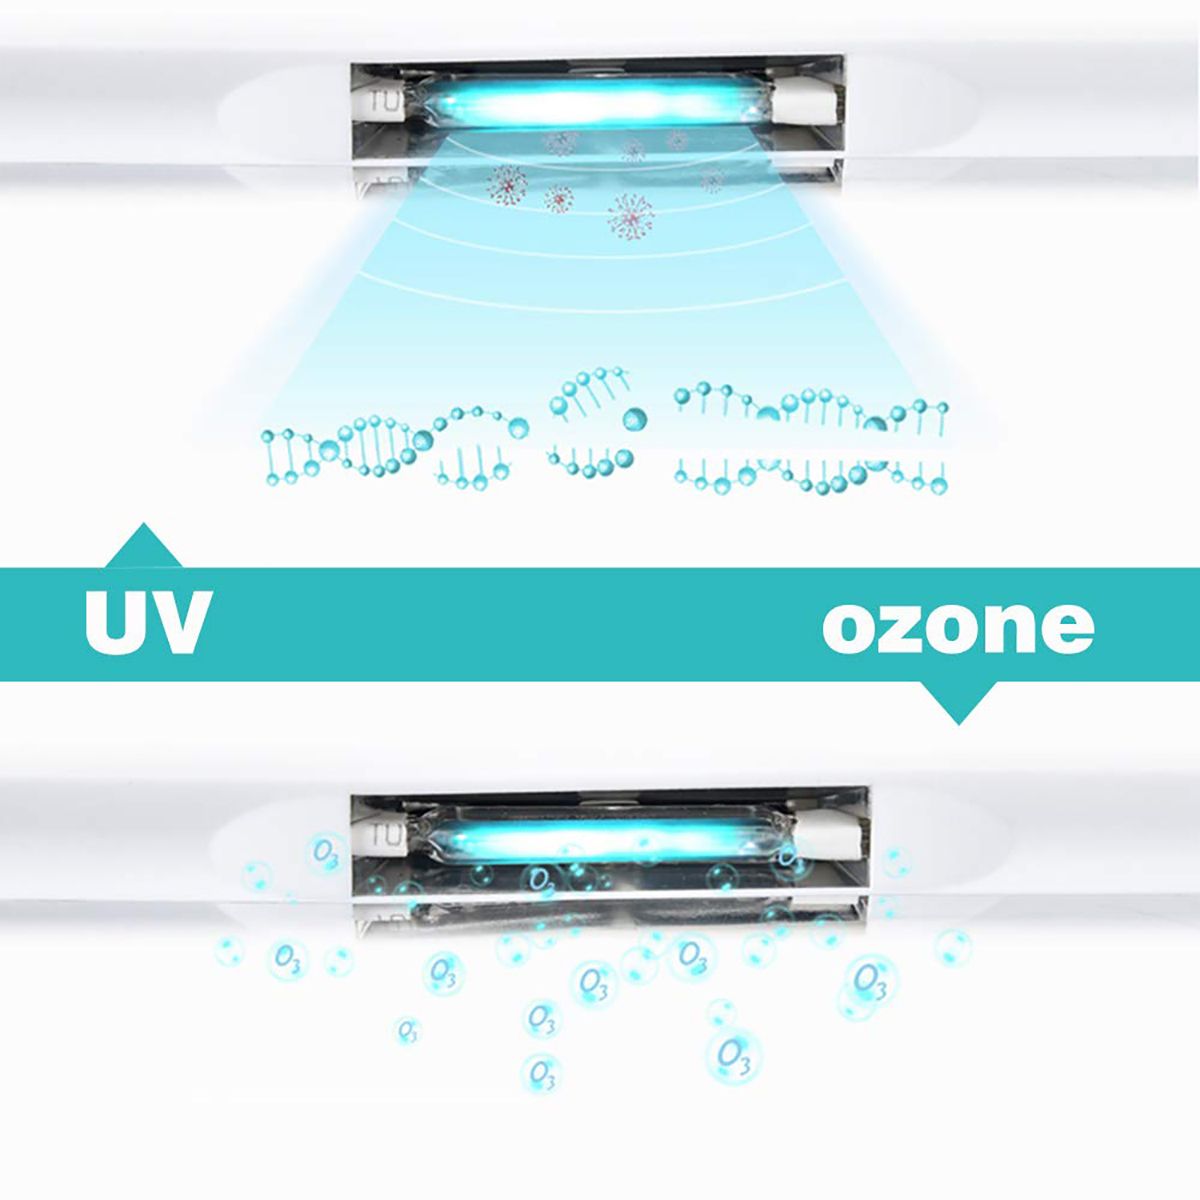 Multi-function-Portable-Sterilizer-UV-Ozone-Disinfection-Box-1675354